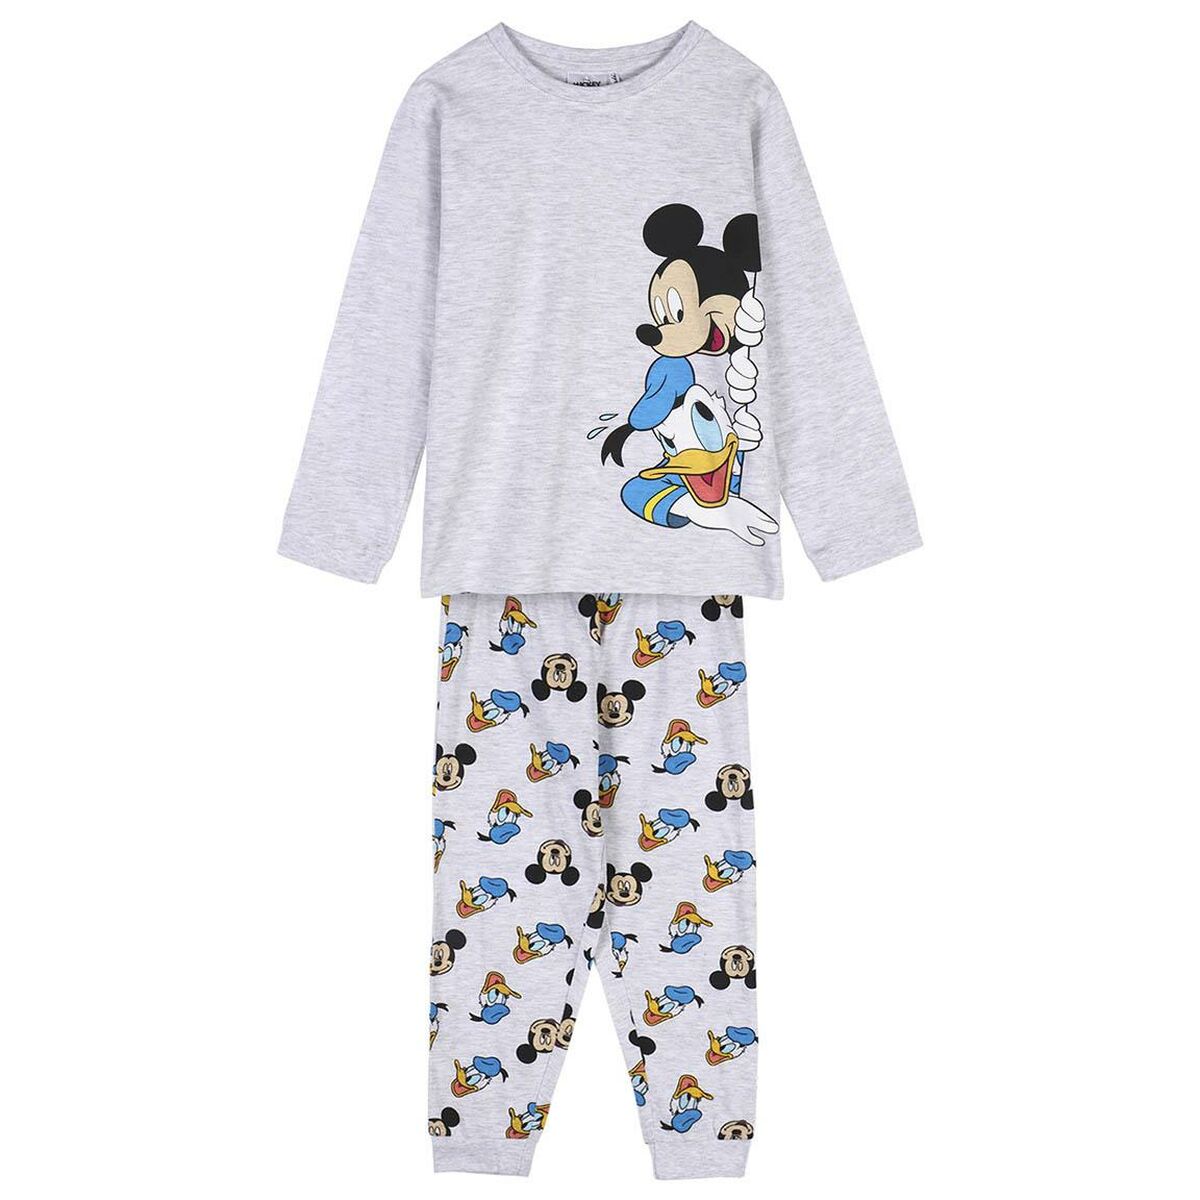 Osta tuote Pyjamat Lasten Mickey Mouse Harmaa (Koko: 6 vuotta) verkkokaupastamme Korhone: Lelut & Asut 10% alennuksella koodilla KORHONE